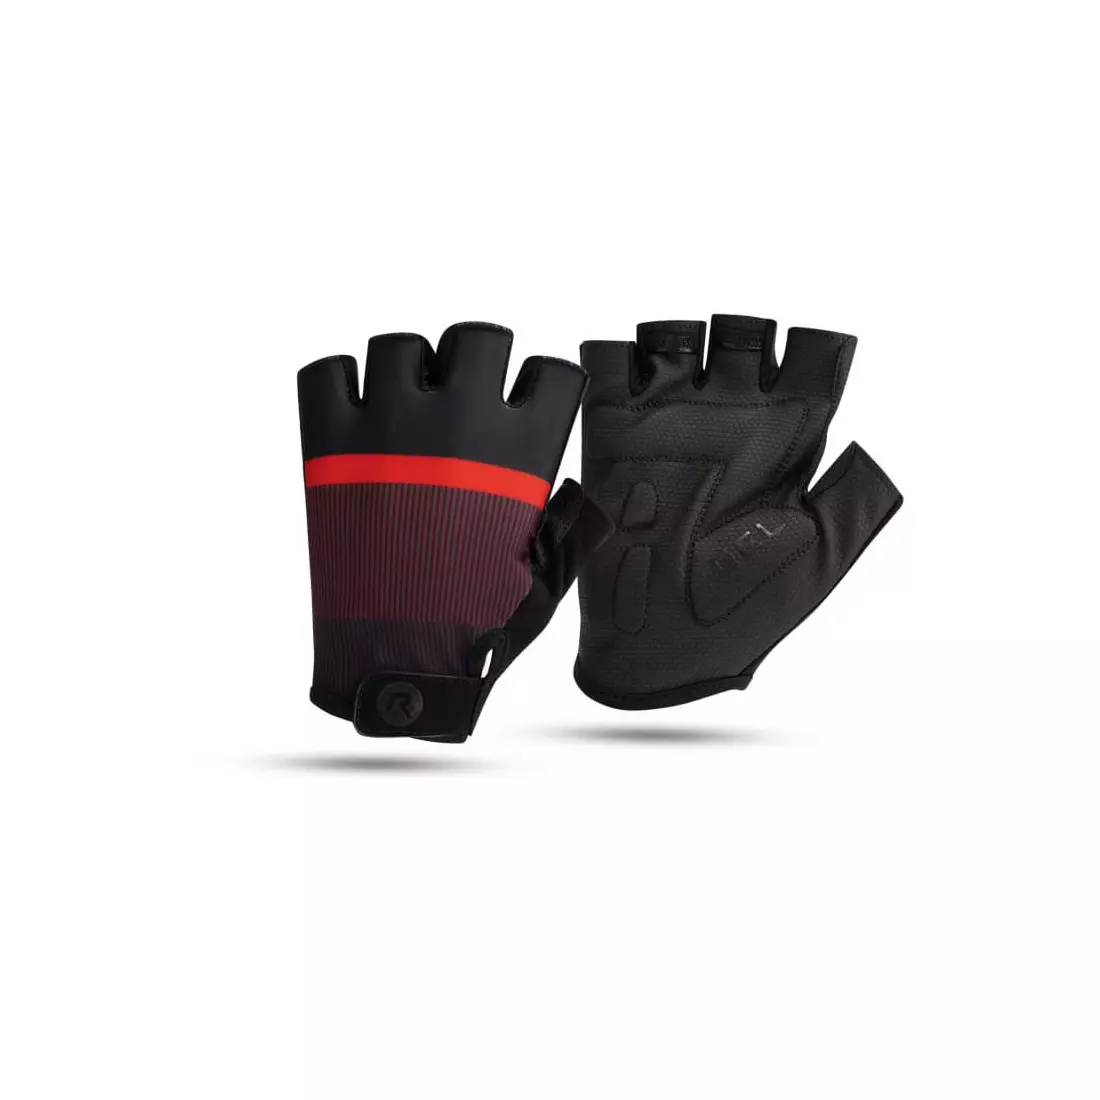 Rogelli HERO II cycling gloves, black and maroon